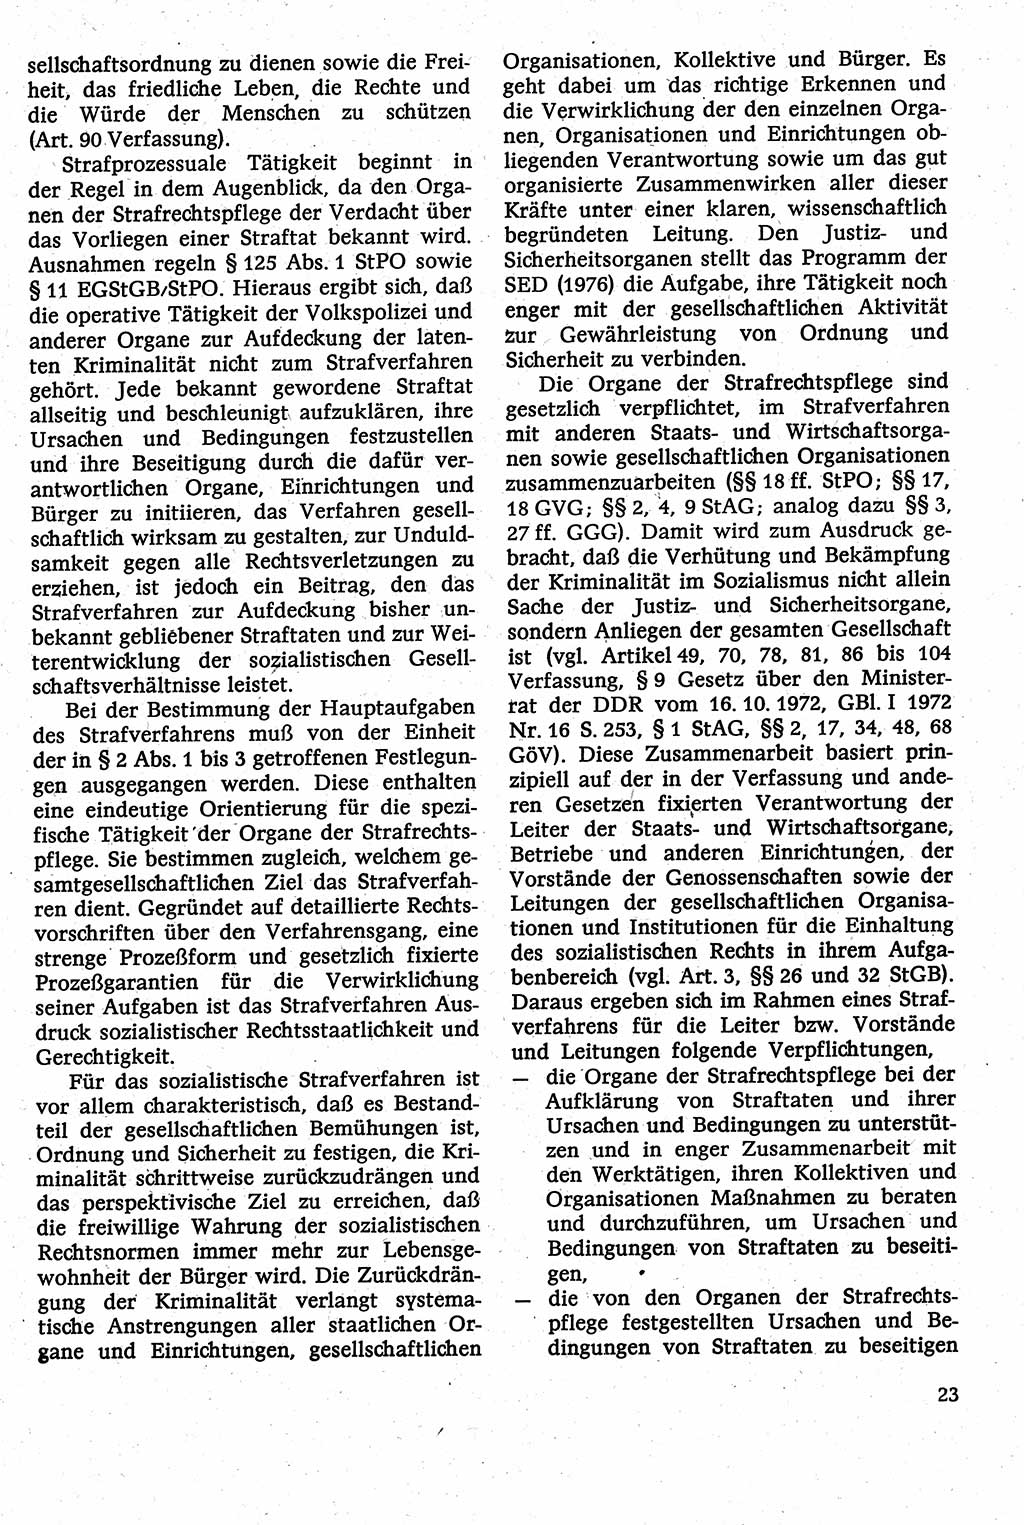 Strafverfahrensrecht [Deutsche Demokratische Republik (DDR)], Lehrbuch 1982, Seite 23 (Strafverf.-R. DDR Lb. 1982, S. 23)